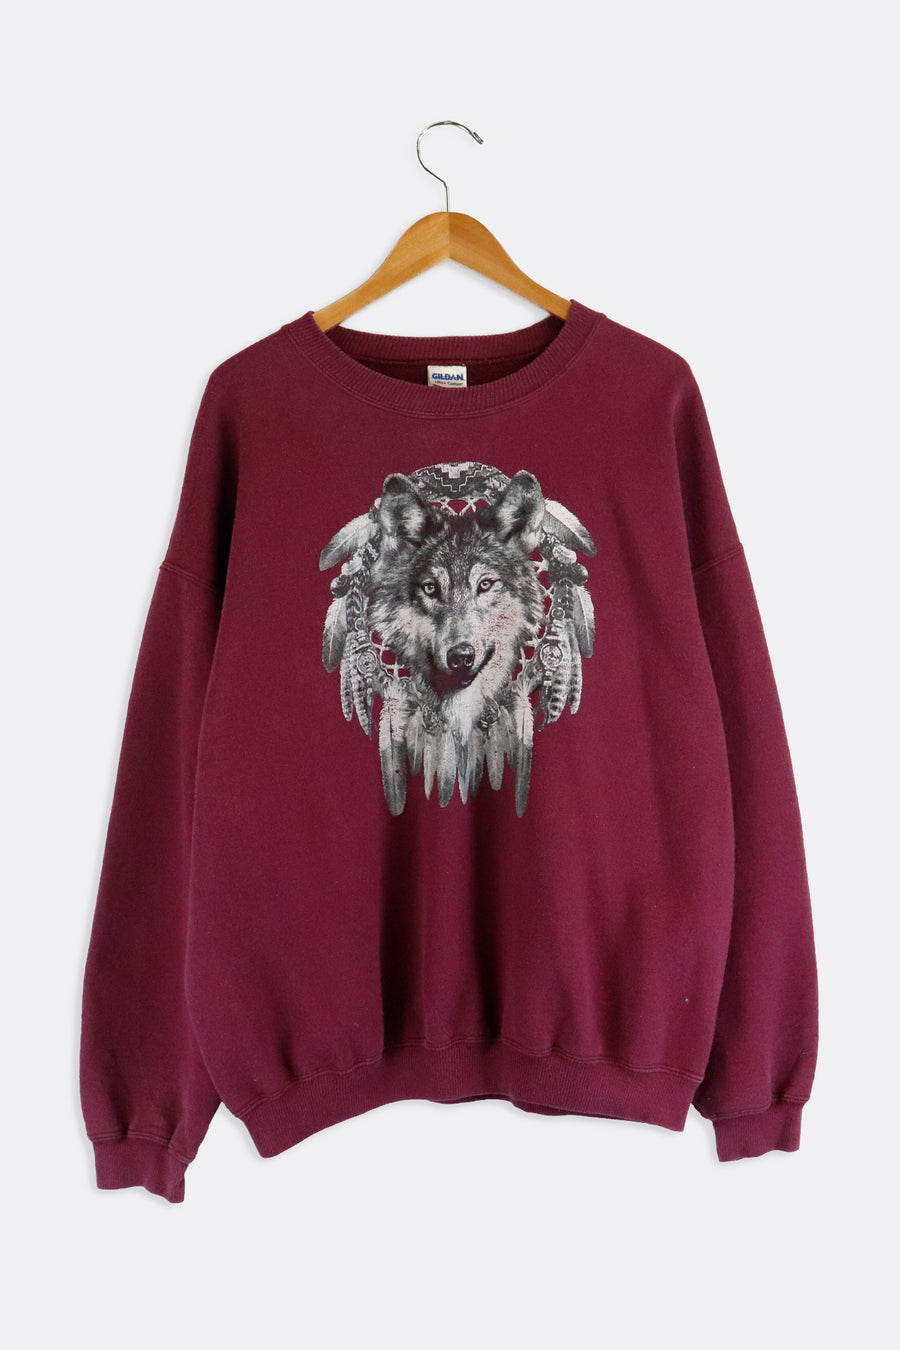 Vintage Wolf Dream Catcher Nature Graphic Sweatshirt Sz XL